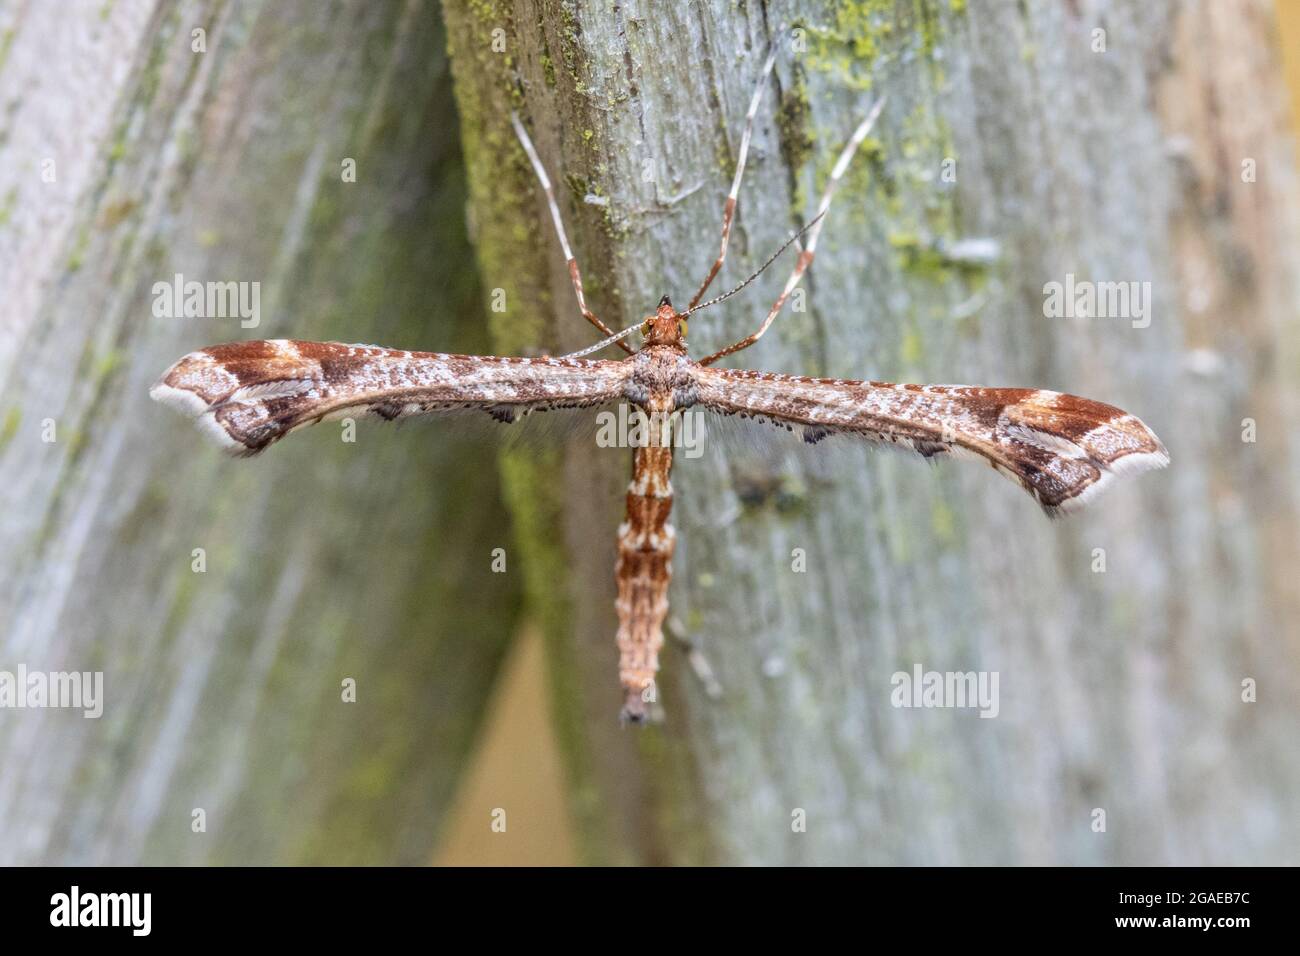 Vida salvaje del Reino Unido: Hermosa polilla de pluma (Amblyptilia acanthadactyla) encaramada en una valla, después de ser perturbada mientras segaba el césped, en cruciforme descansando p Foto de stock